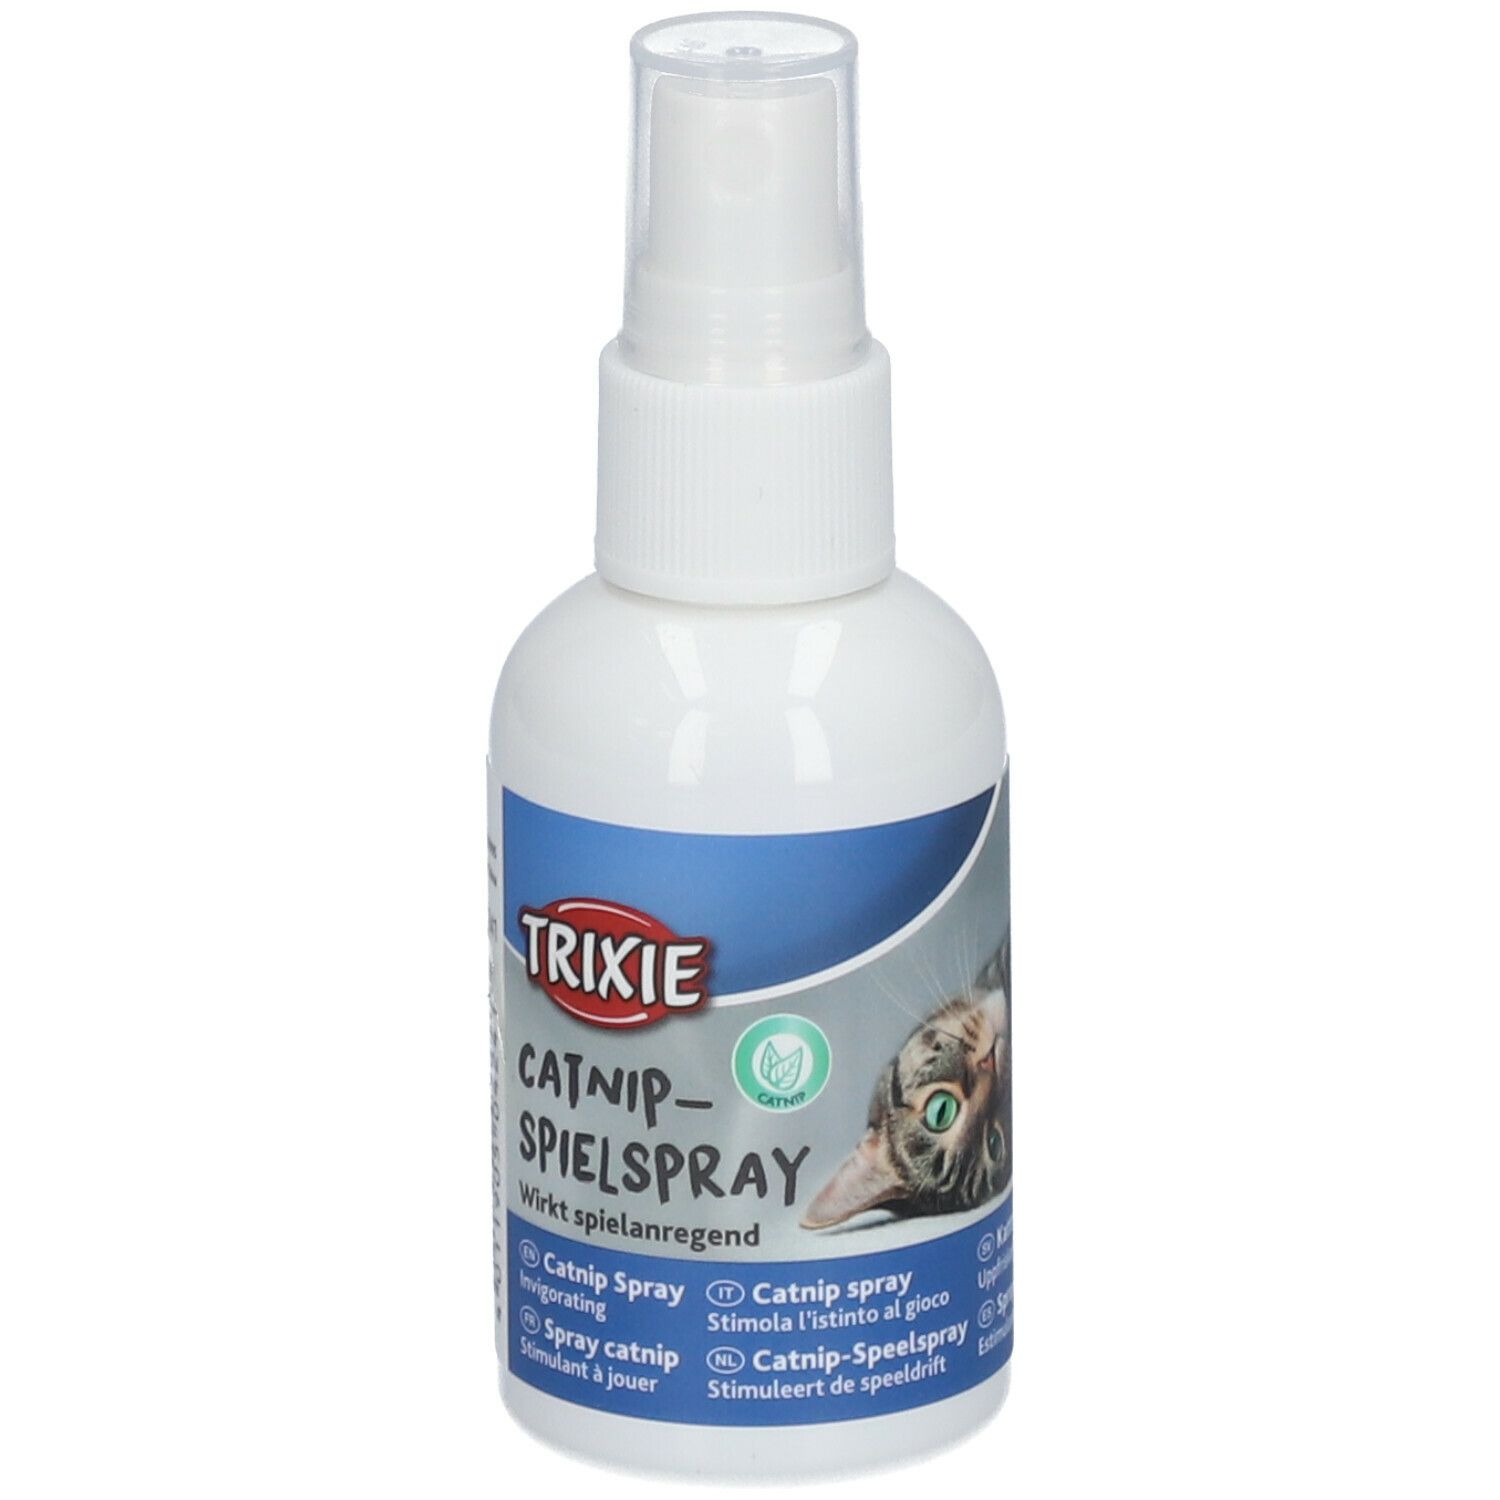 TRIXIE Catnip Spray